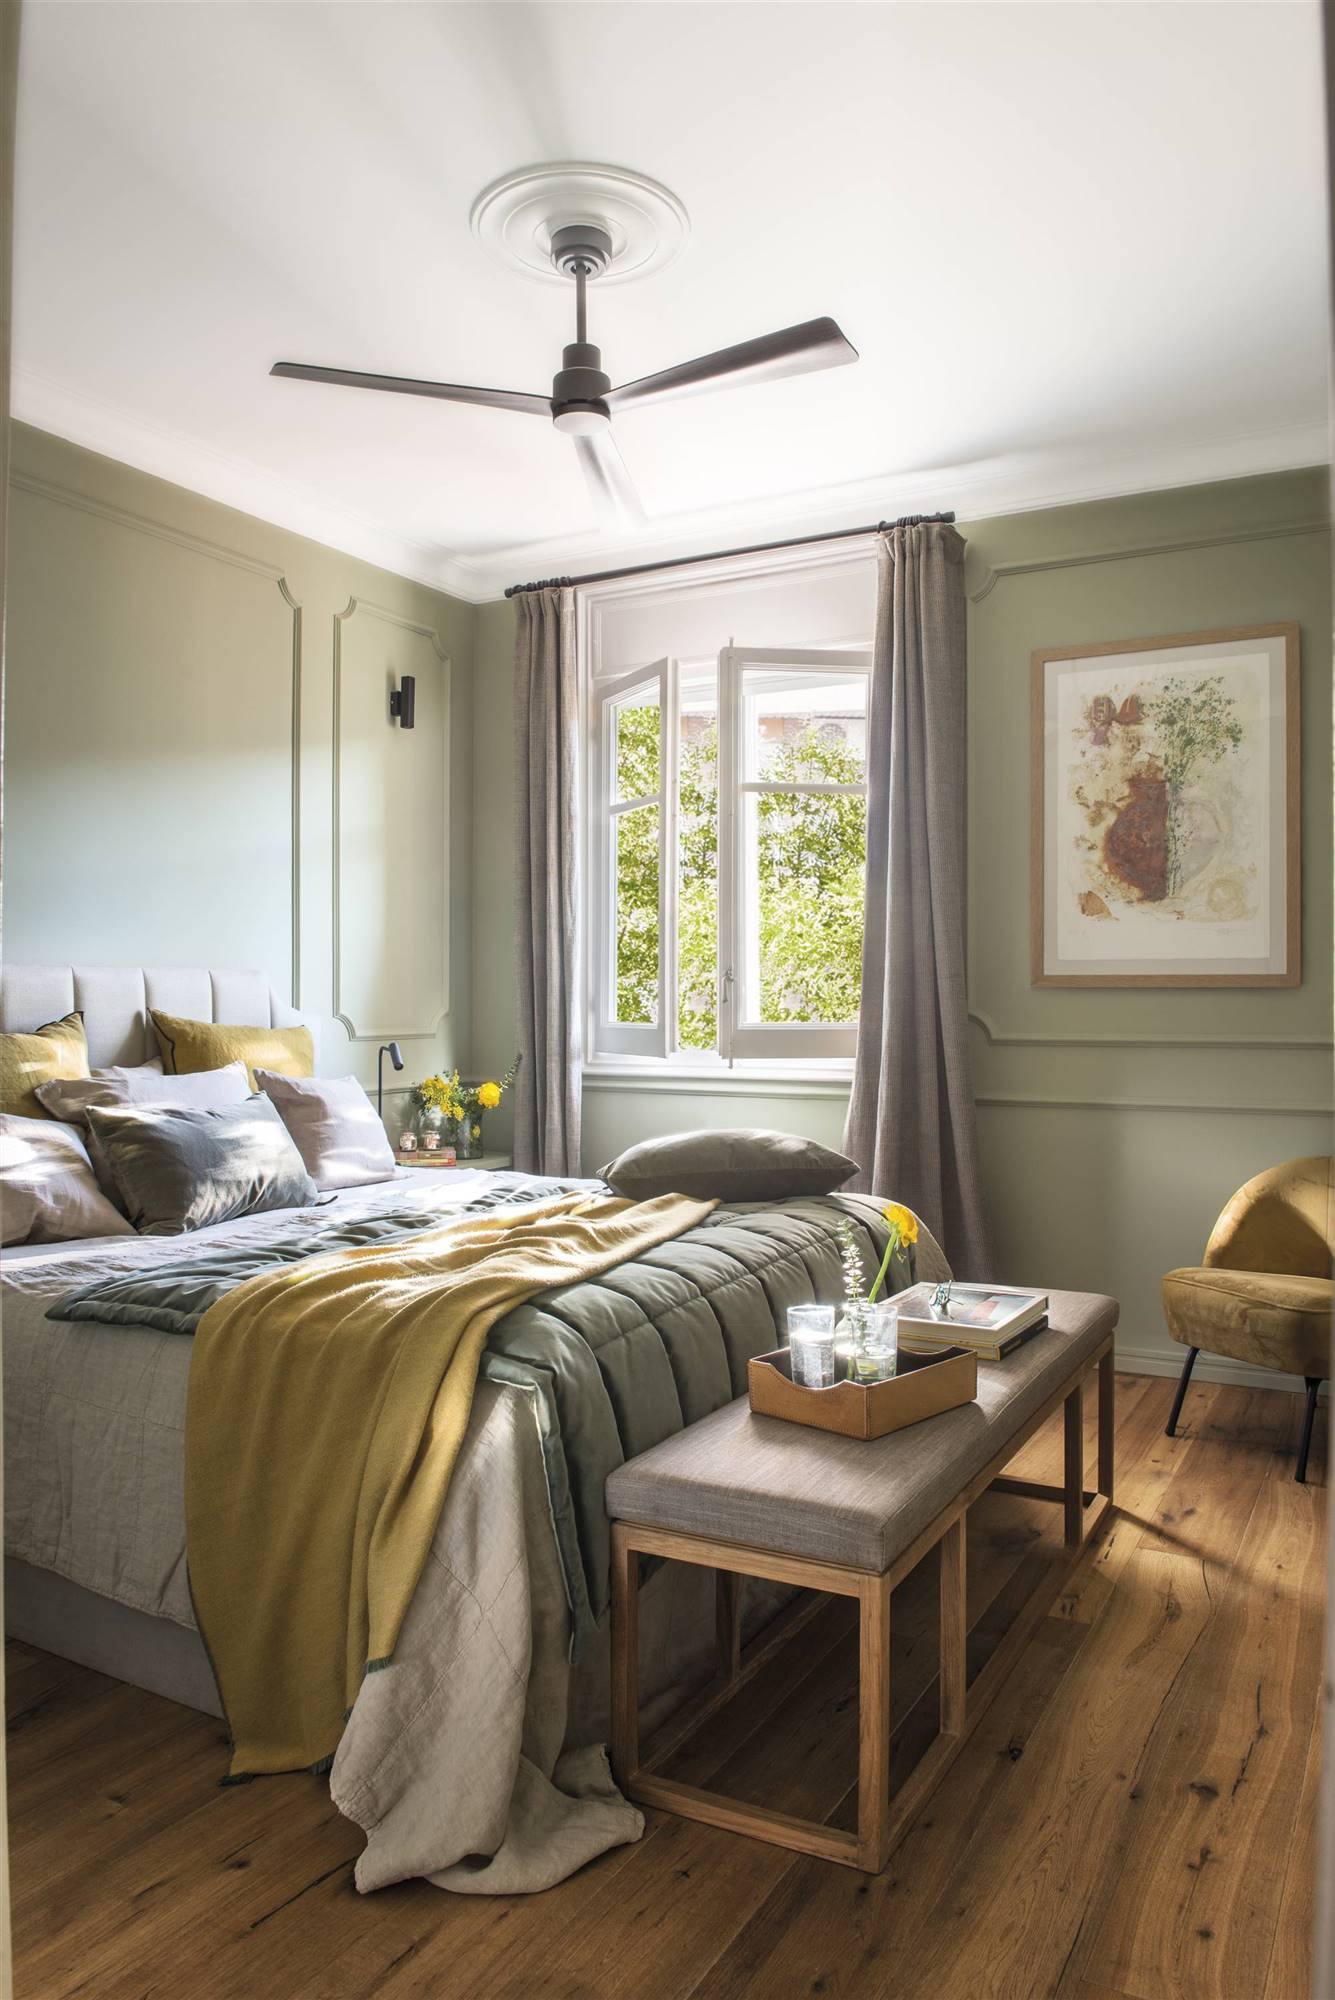 Dormitorio verde empolvado elegante con molduras y banqueta.